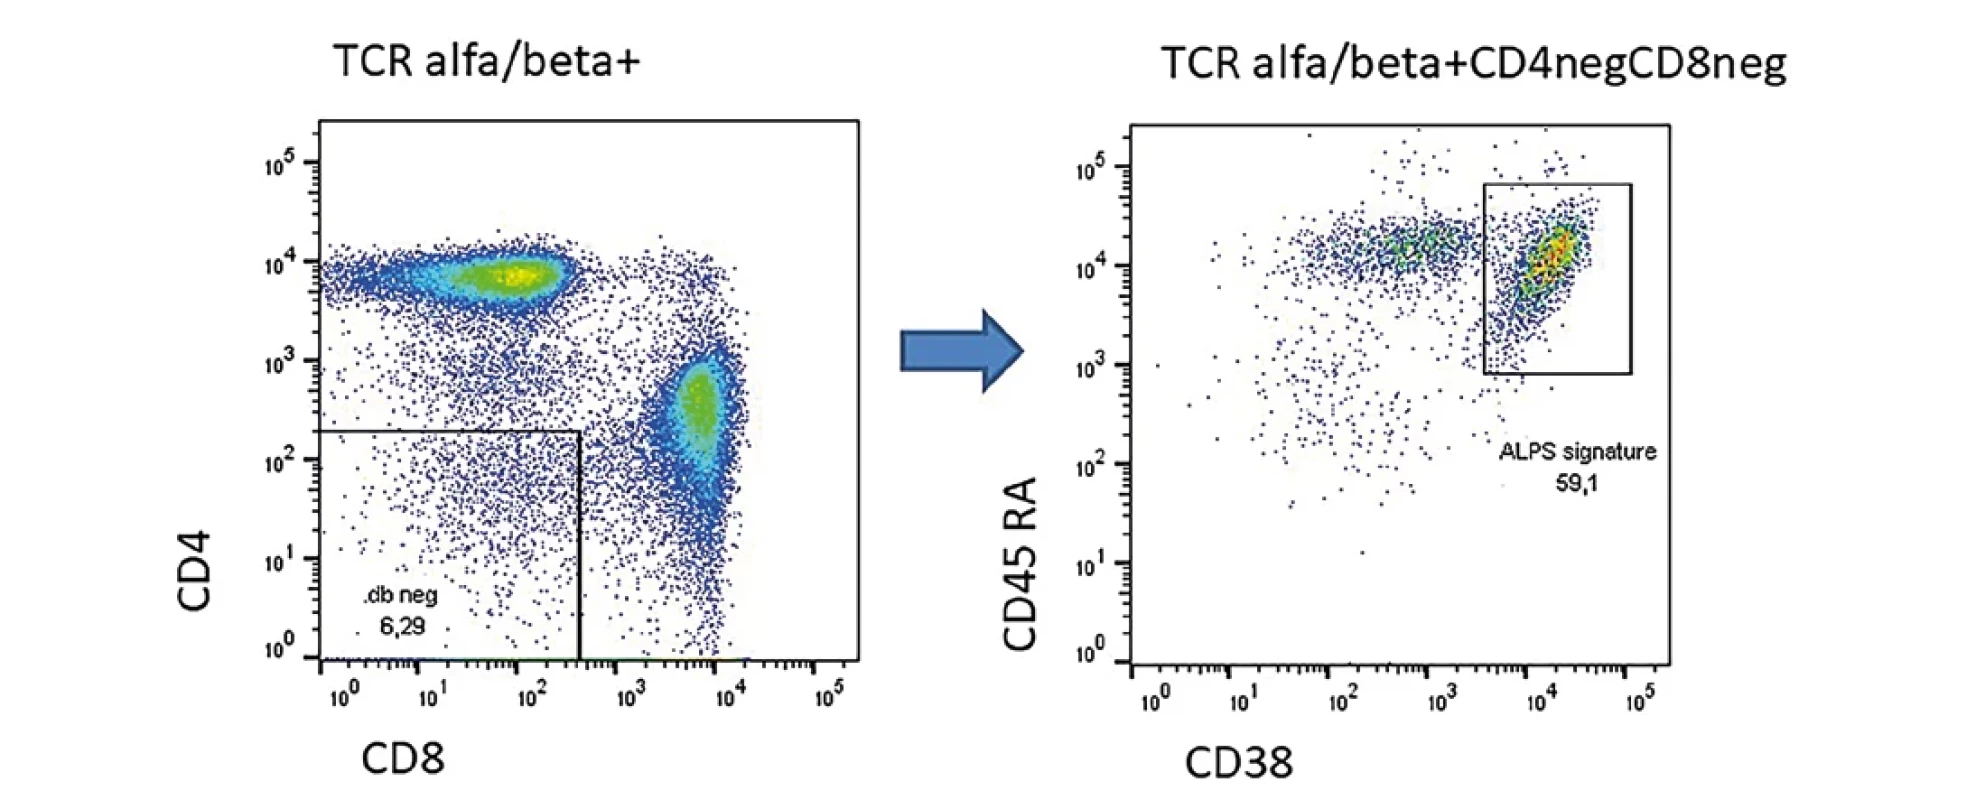 Příklad pacienta s prokázanou heterozygotní mutací v genu Fas s projevy lymfoproliferace a splenomegaliÍ. U pacienta zřetelně zvýšené TCR alfa/beta dvojitě negativní T lymfocyty a zřetelným tzv. ALPS signature.